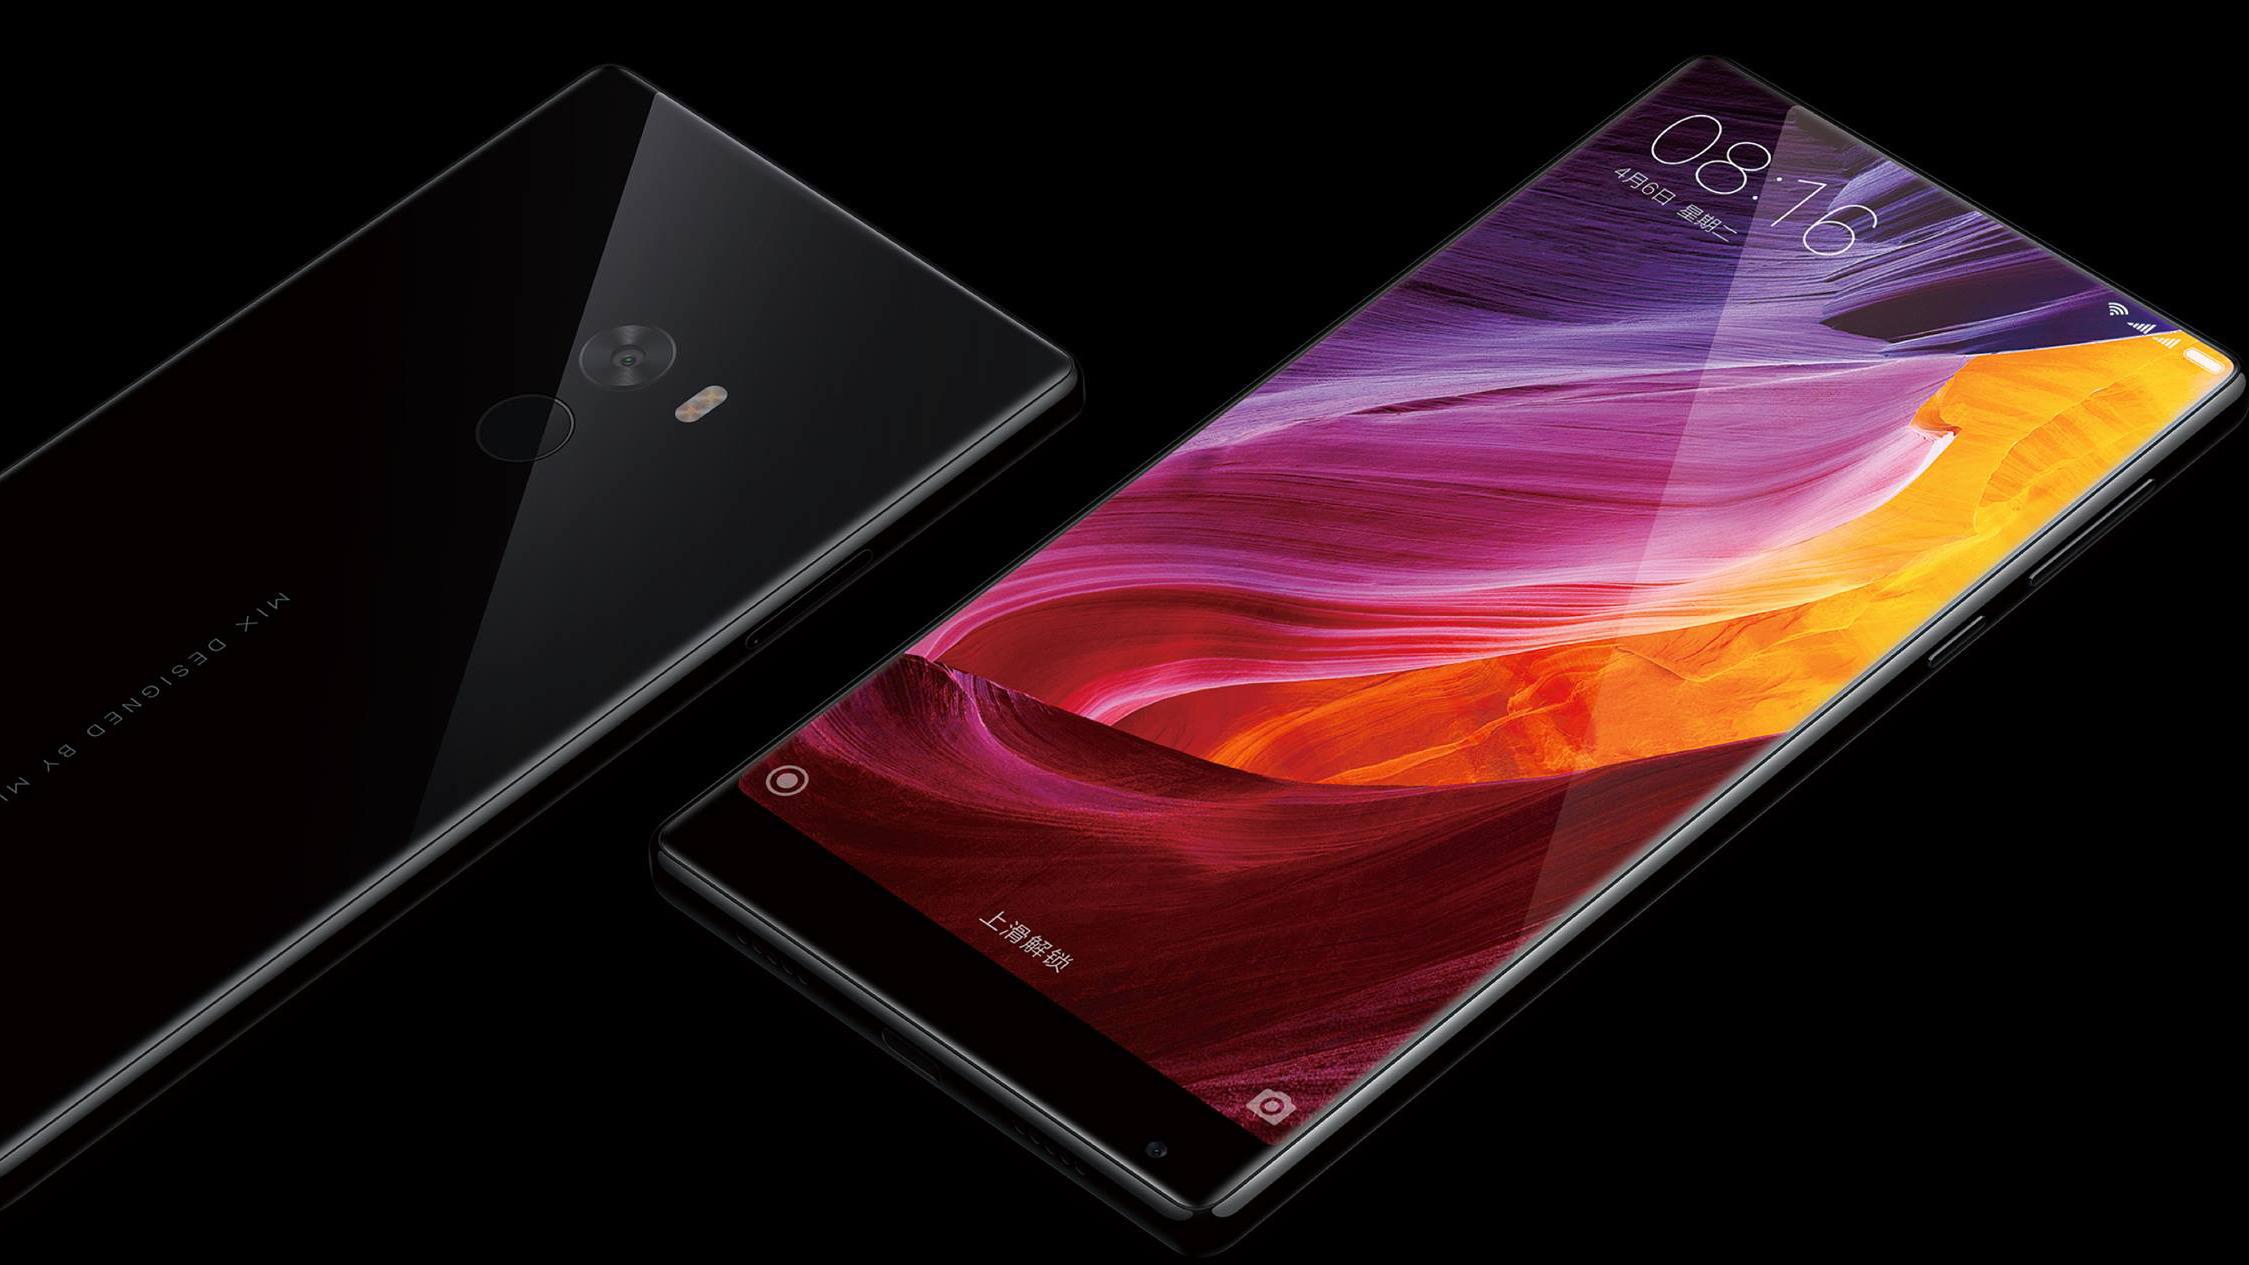 Tidligere rykter har indikert at S8 kan komme med en heldekkende skjerm, som på her avbildede Xiaomi Mi MIX. Nå ser det ut til at skjermen også kan bli trykkfølsom.